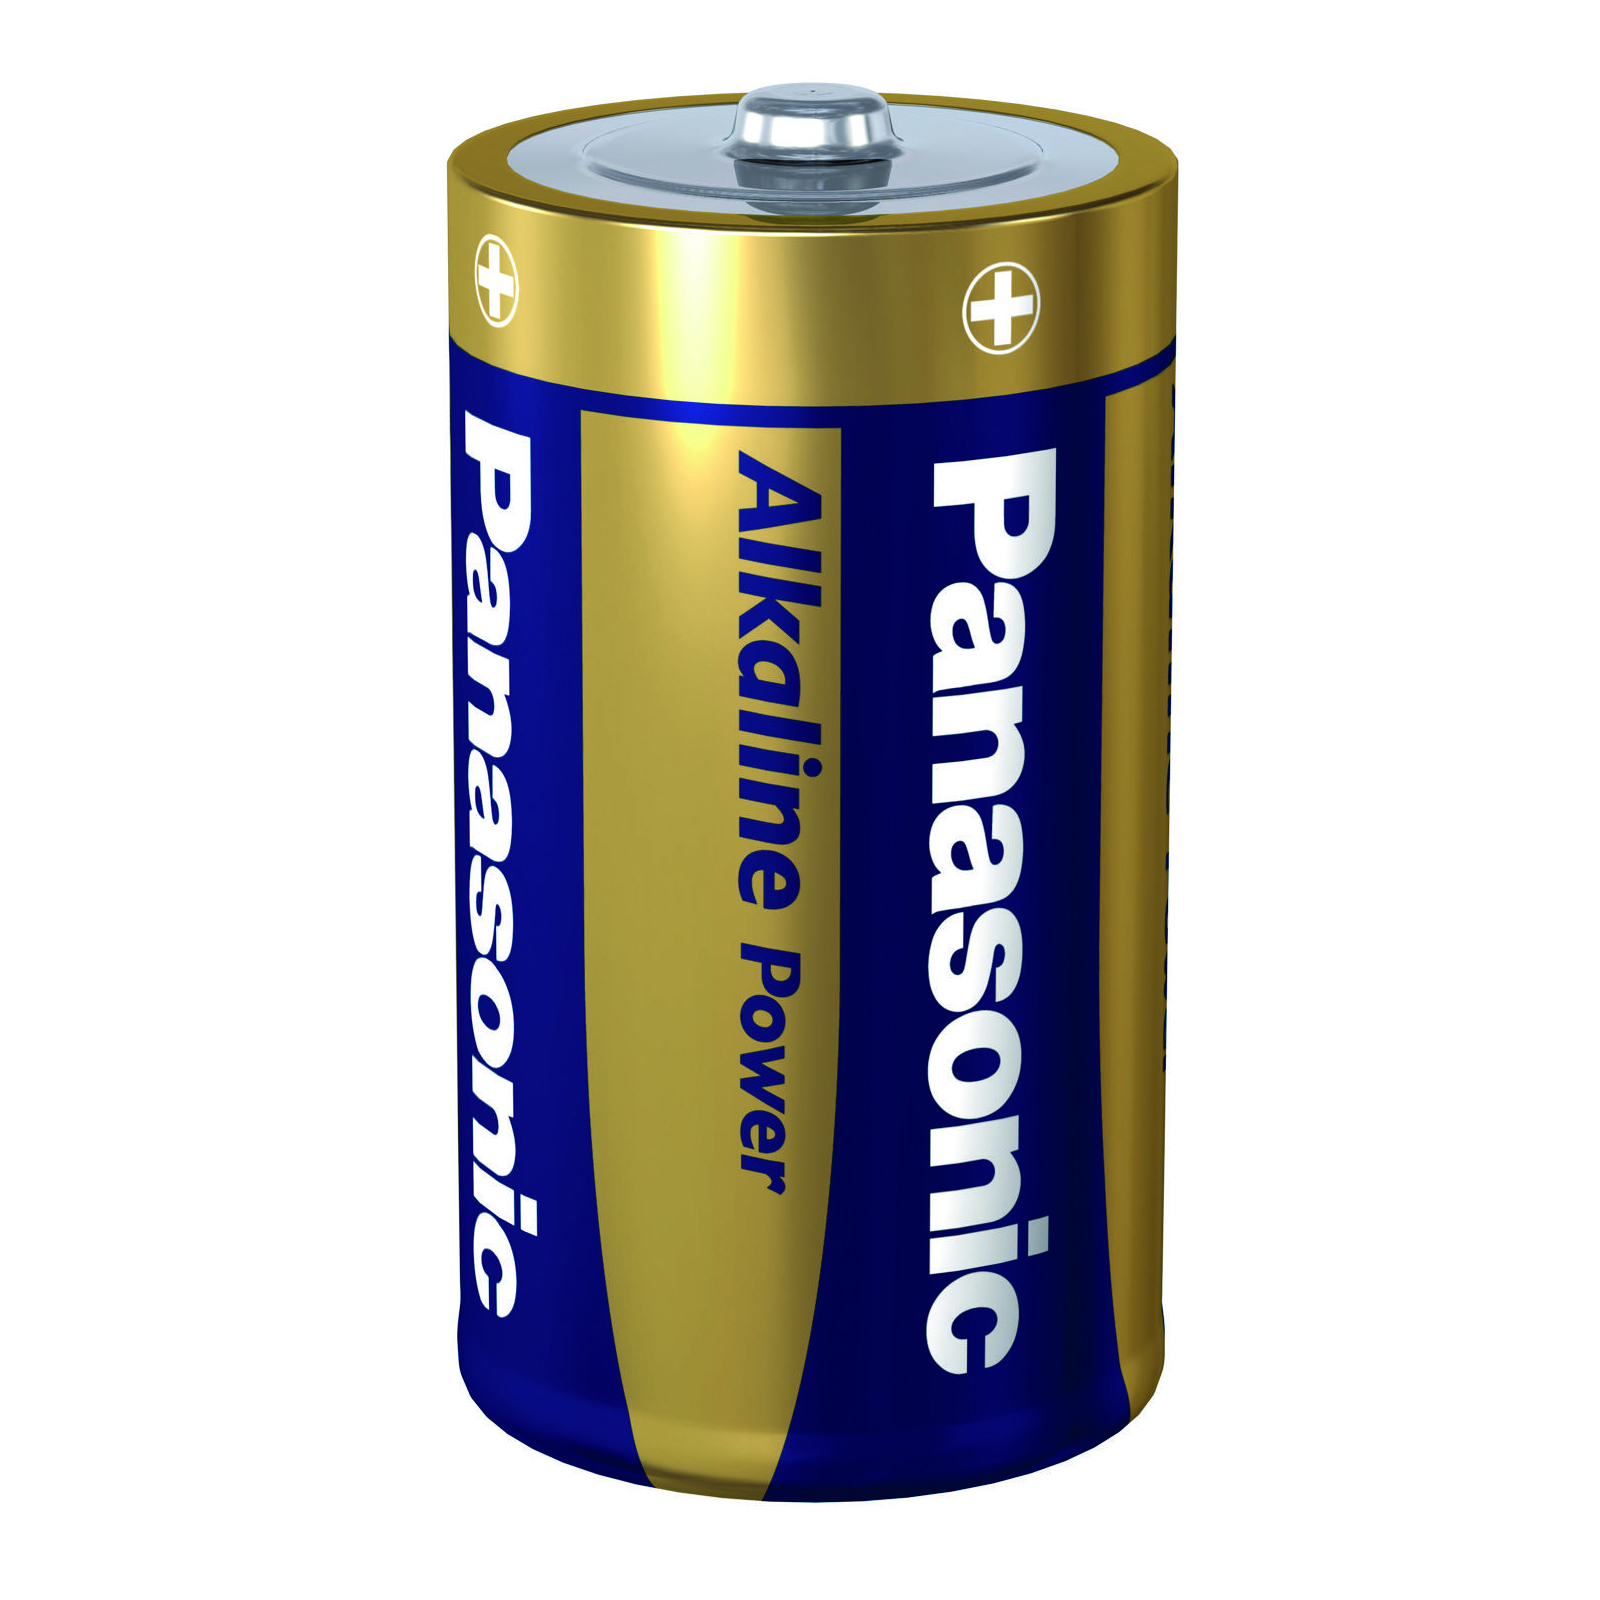 Батарейка Panasonic D LR20 Alkaline Power (Shrink) * 4 (LR20АРВ/4P / LR20REB/4P) зображення 2